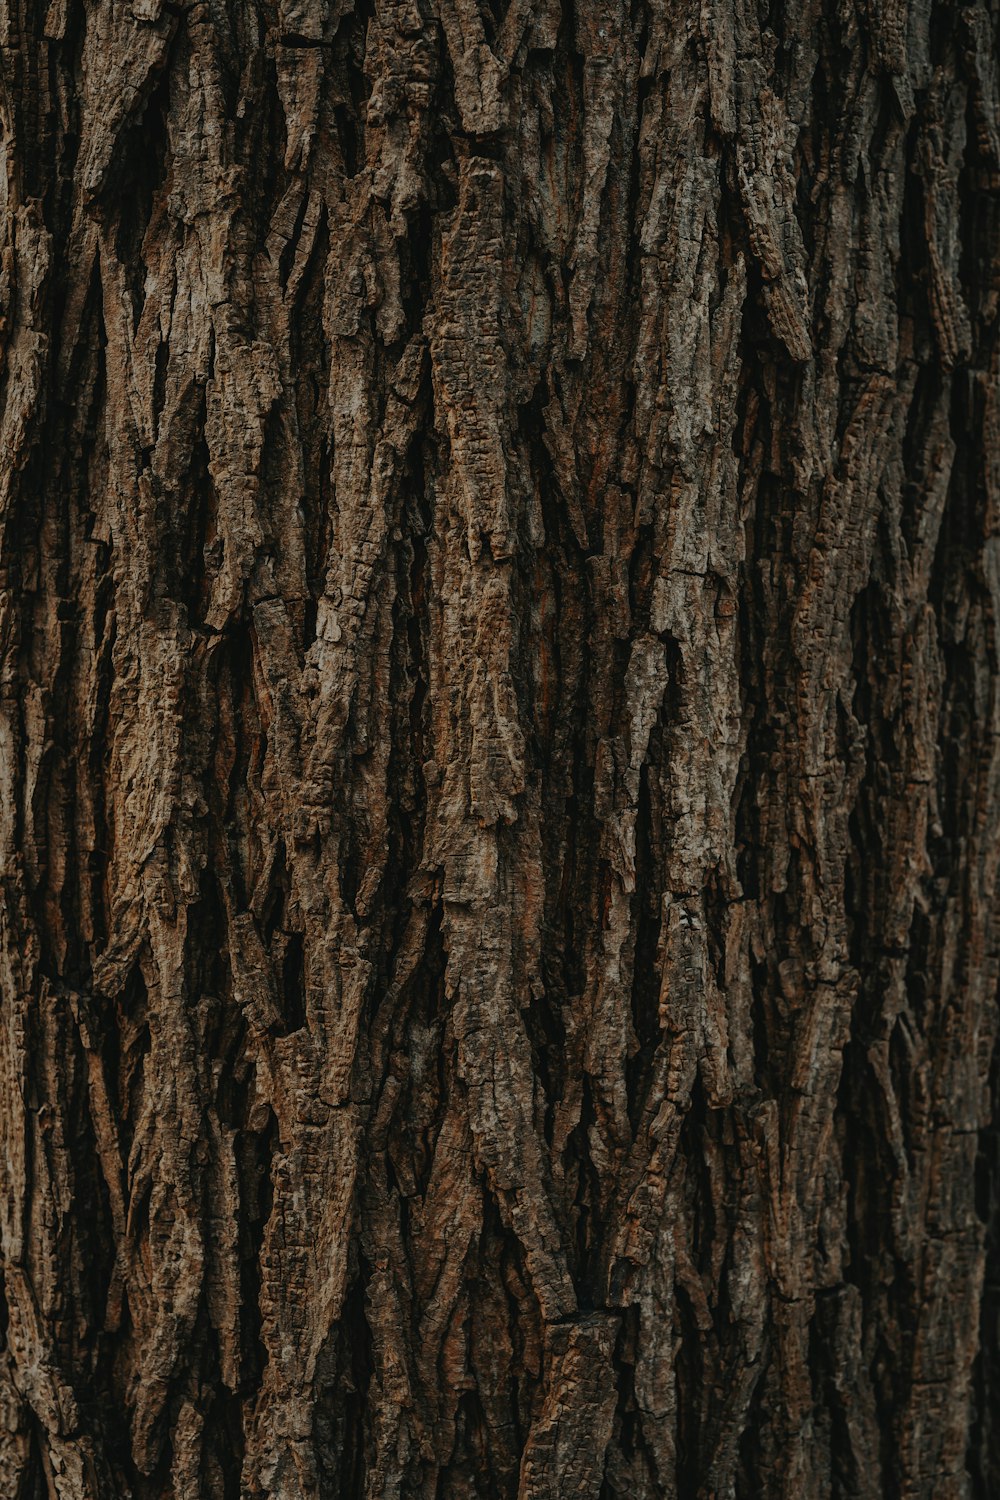 tronco de árbol marrón durante el día